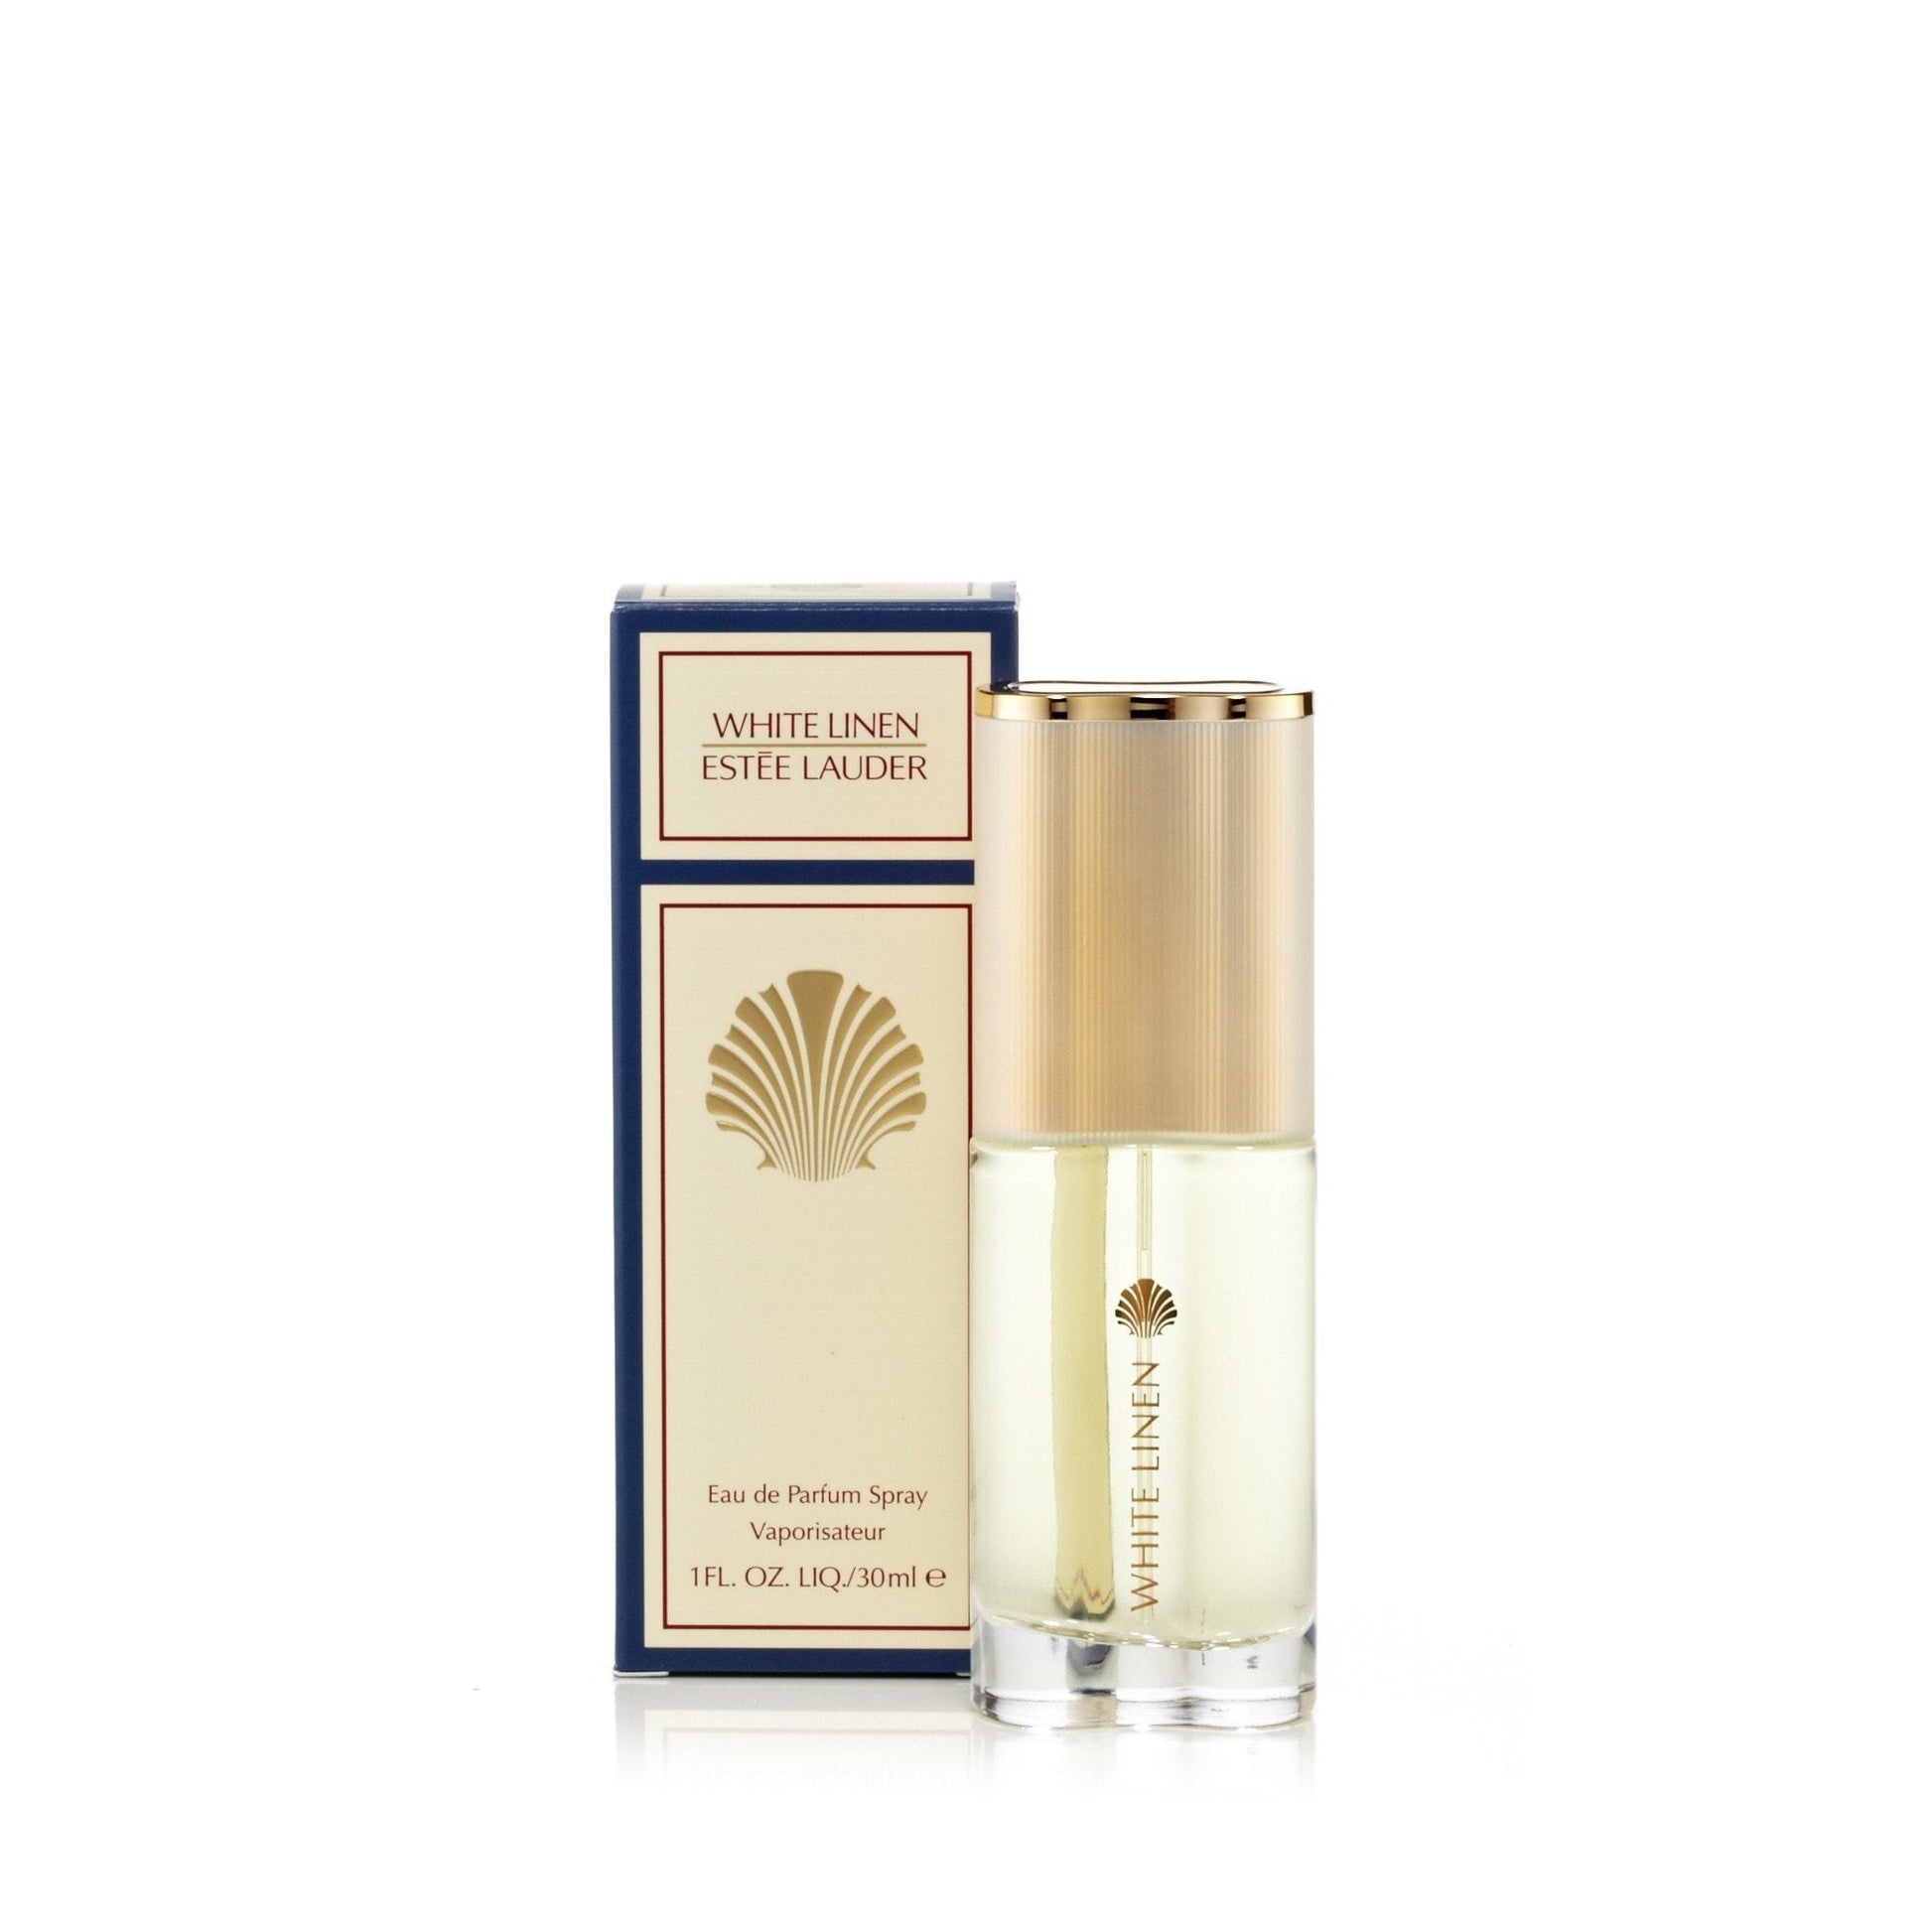 White Linen Eau de Parfum Spray for Women by Estee Lauder, Product image 1